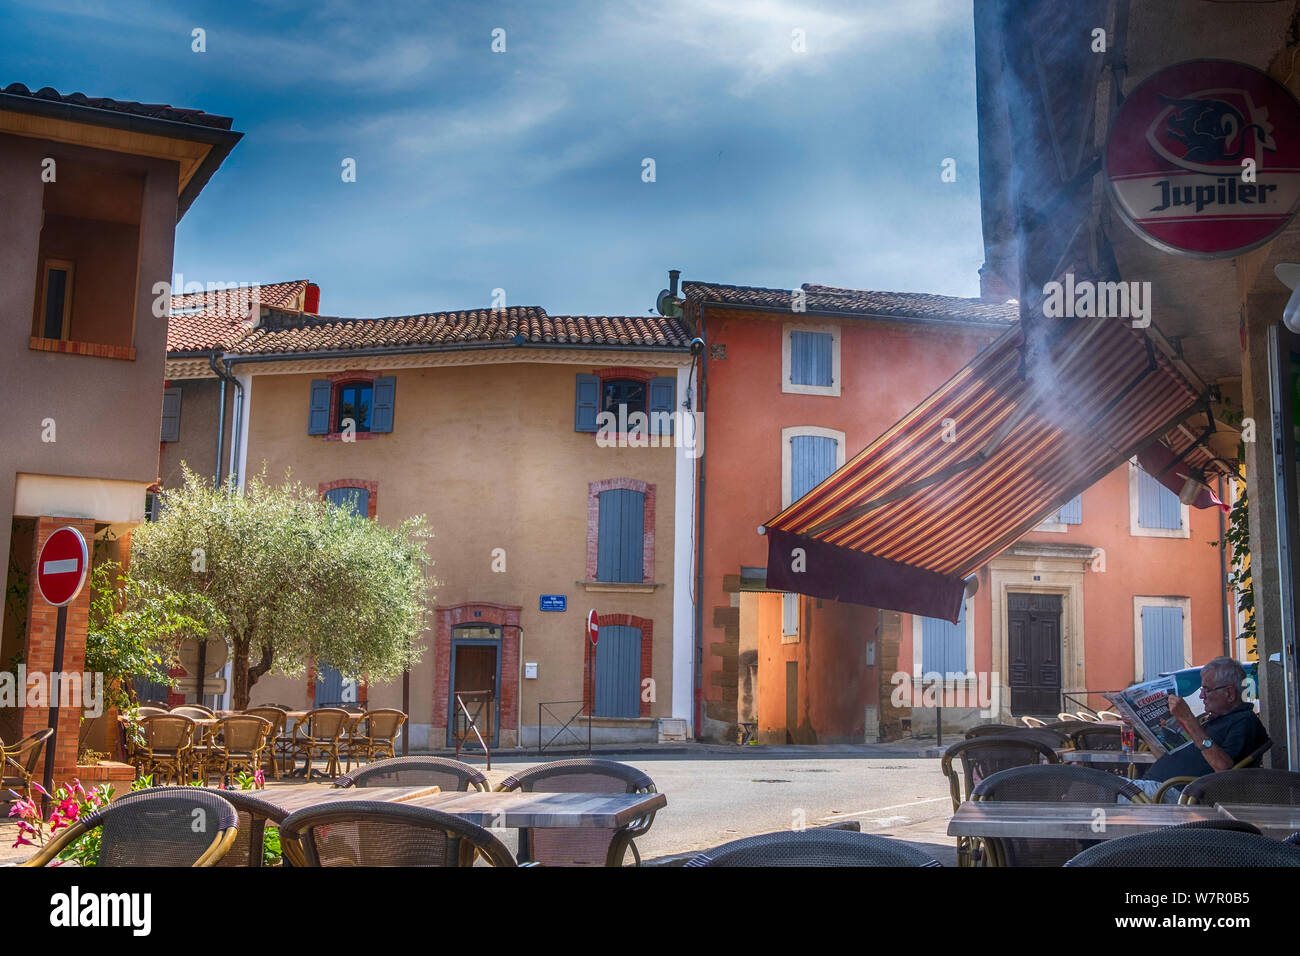 Village Restaurant mit Jupiler Bieres Zeichen, Kühlwasser Nebel, und Häuser im Sommer in Sablet in Provence-Alpes-Cote d'Azur, Frankreich Stockfoto